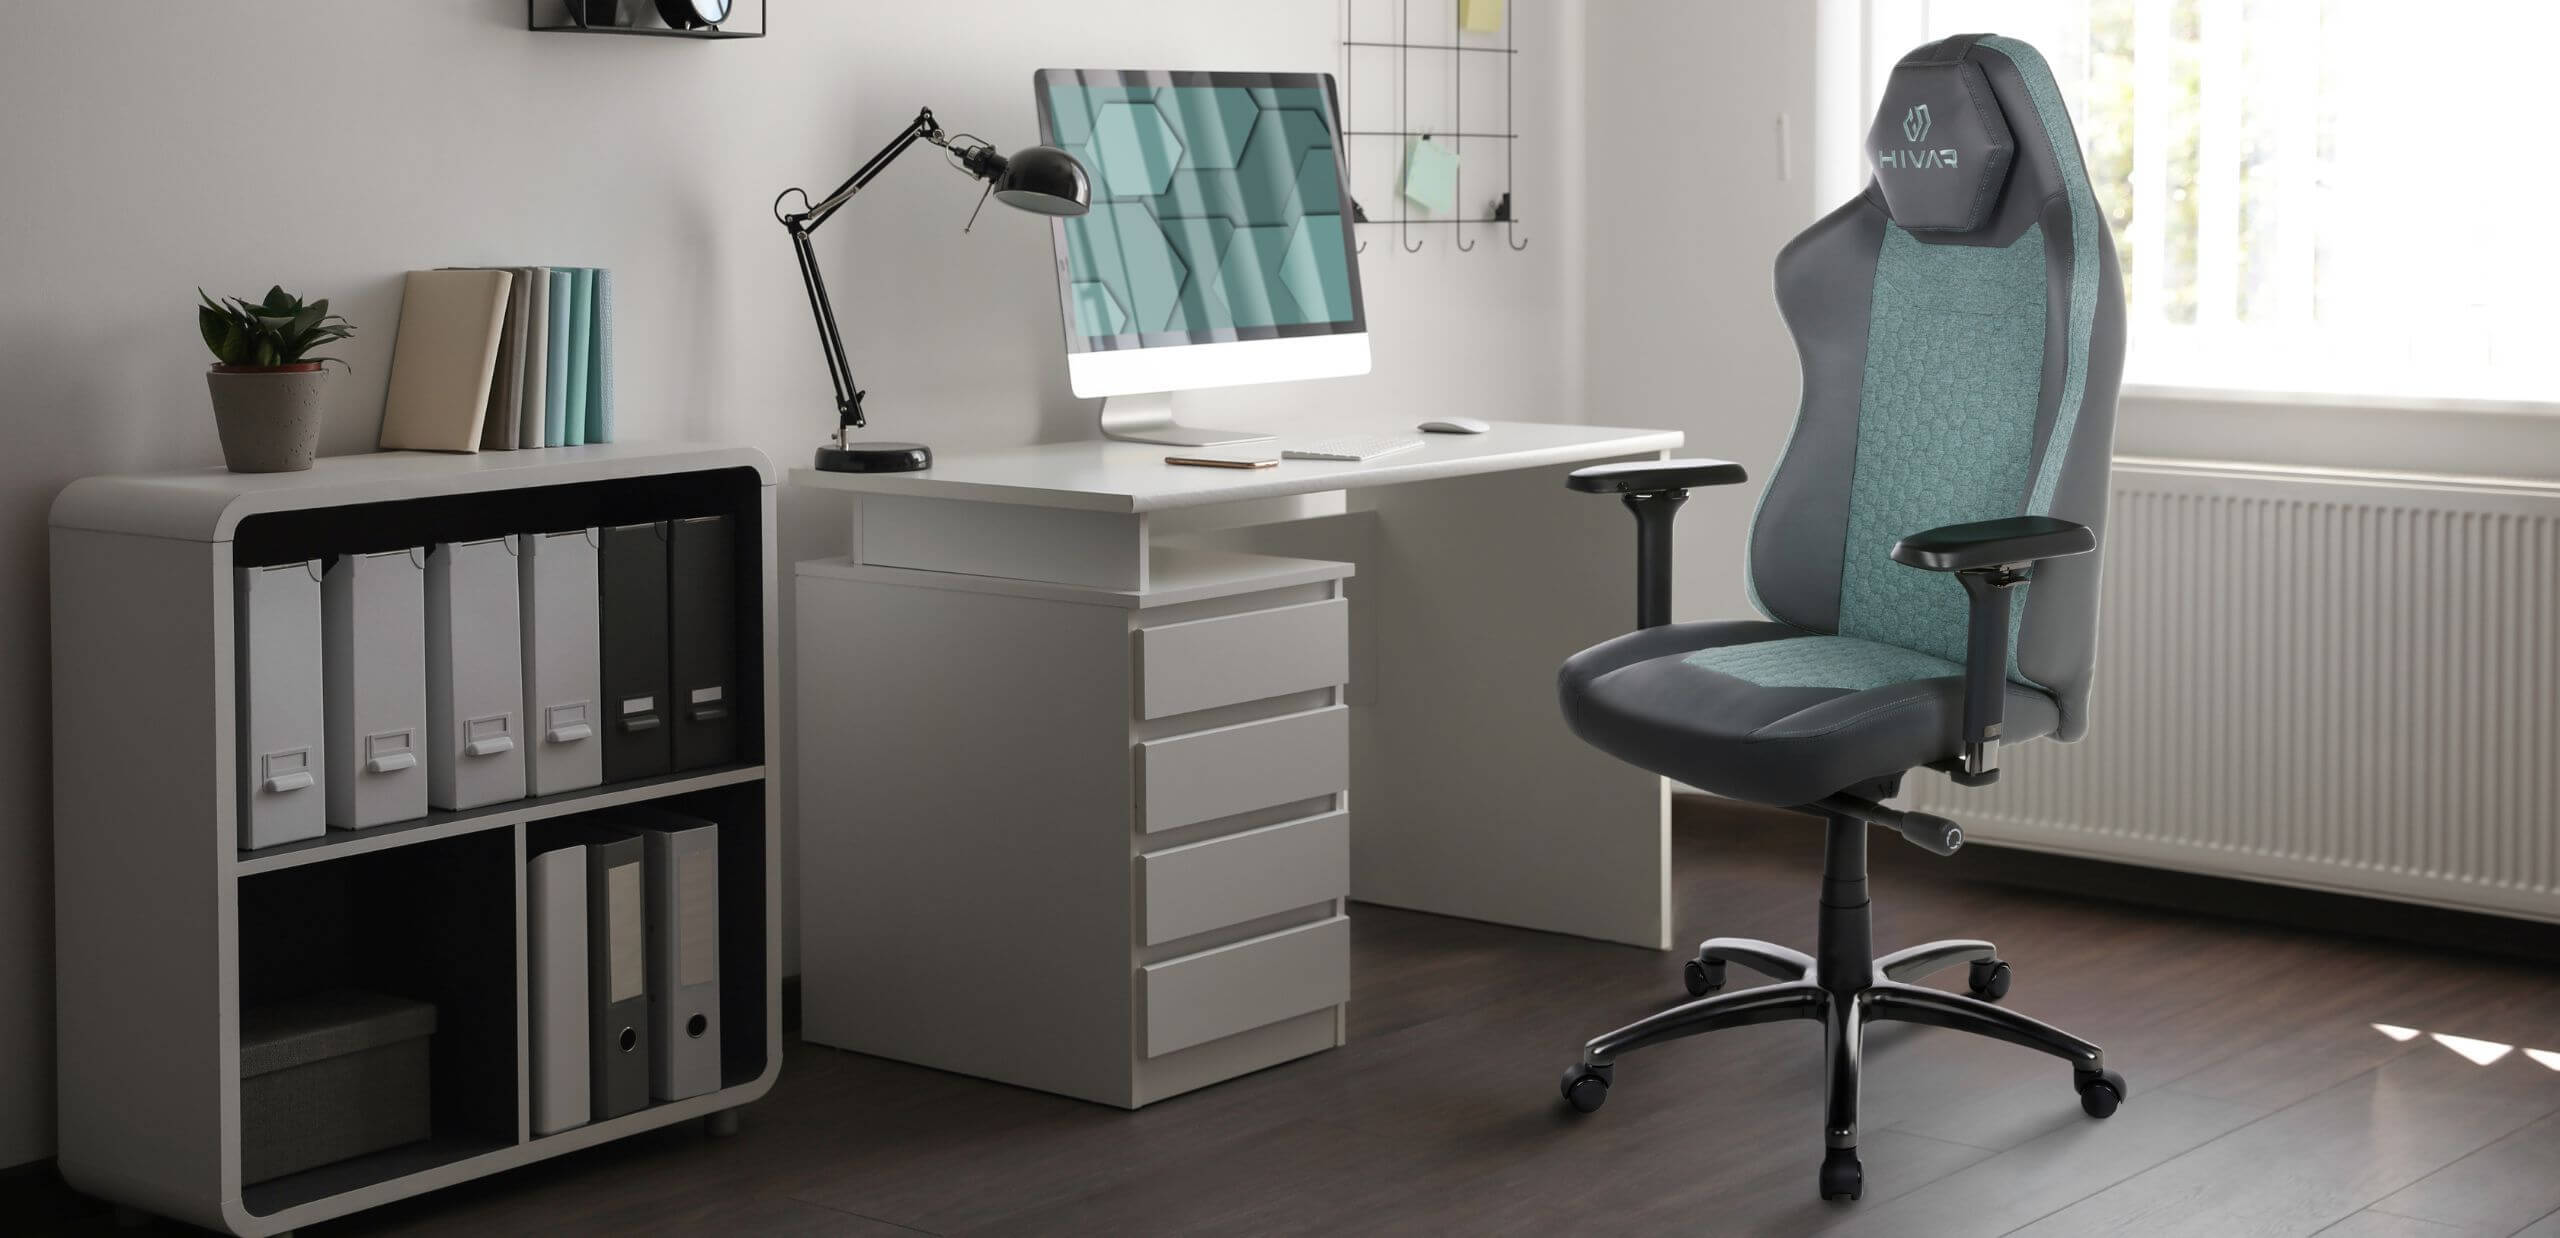 HIVAR Orbical Aurora türkis / anthrazit Farben Bürostuhl vor einem weißen Schreibtisch